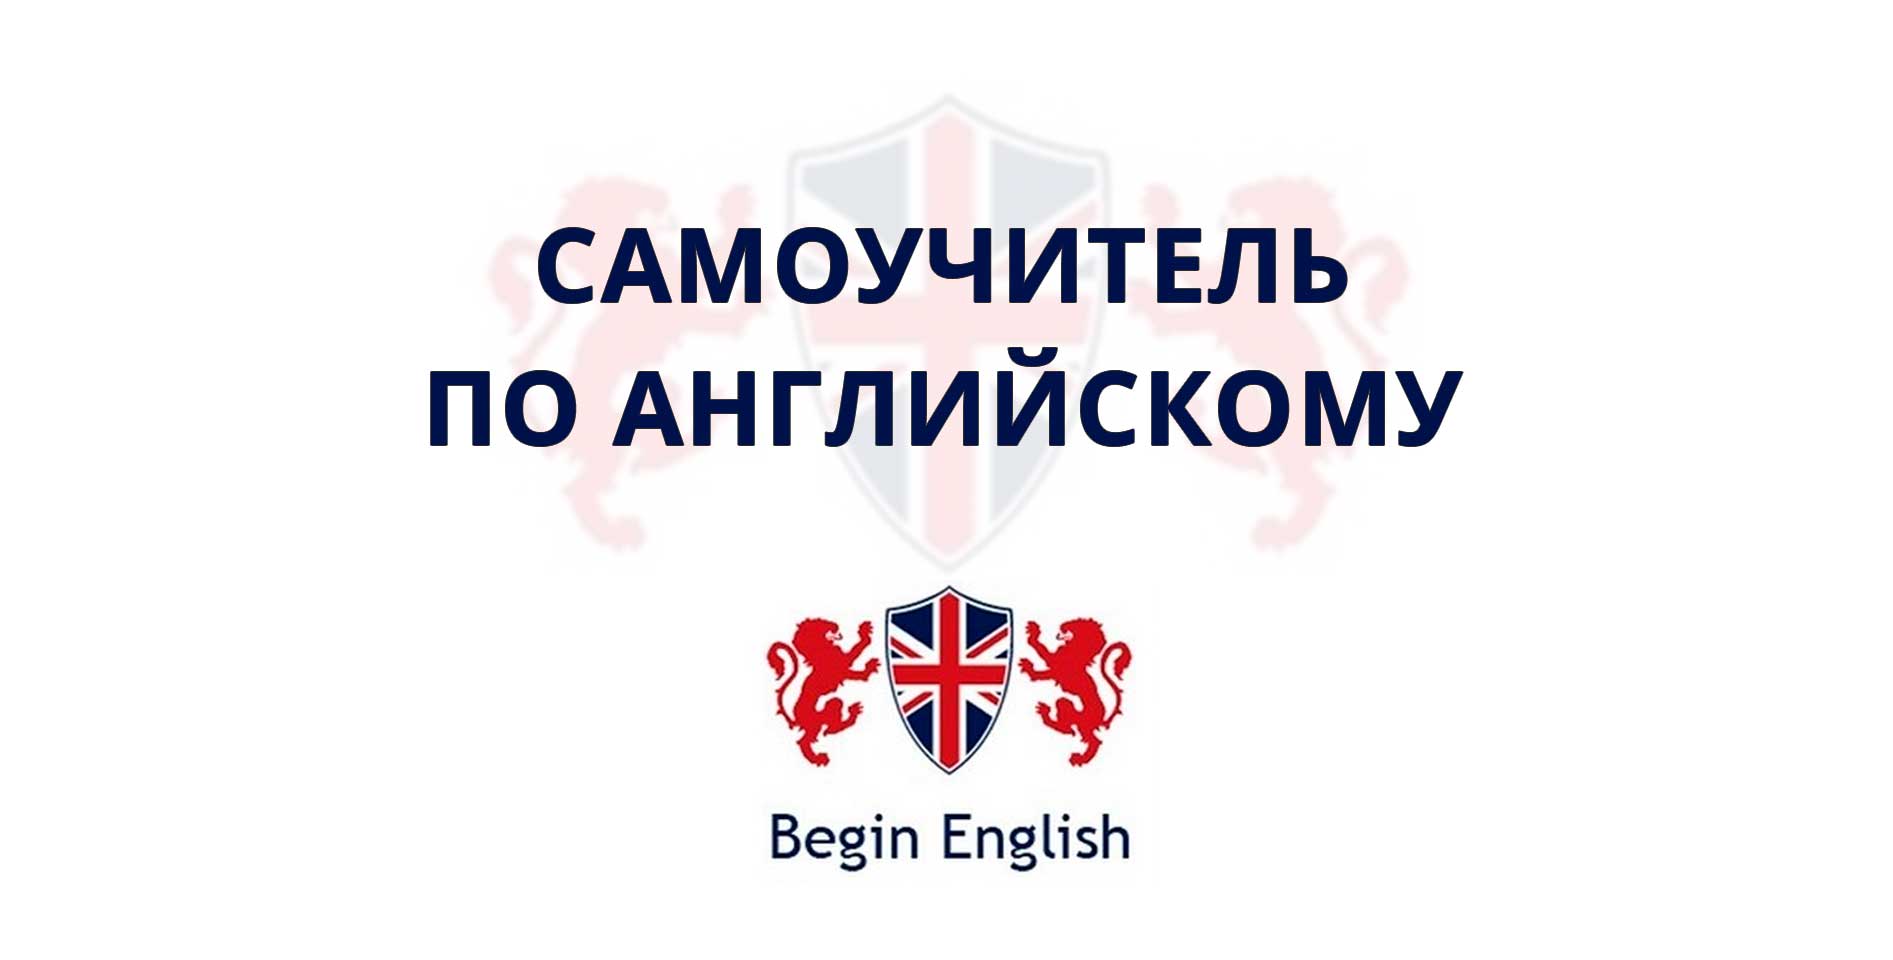 Begin English — Самоучитель по английскому